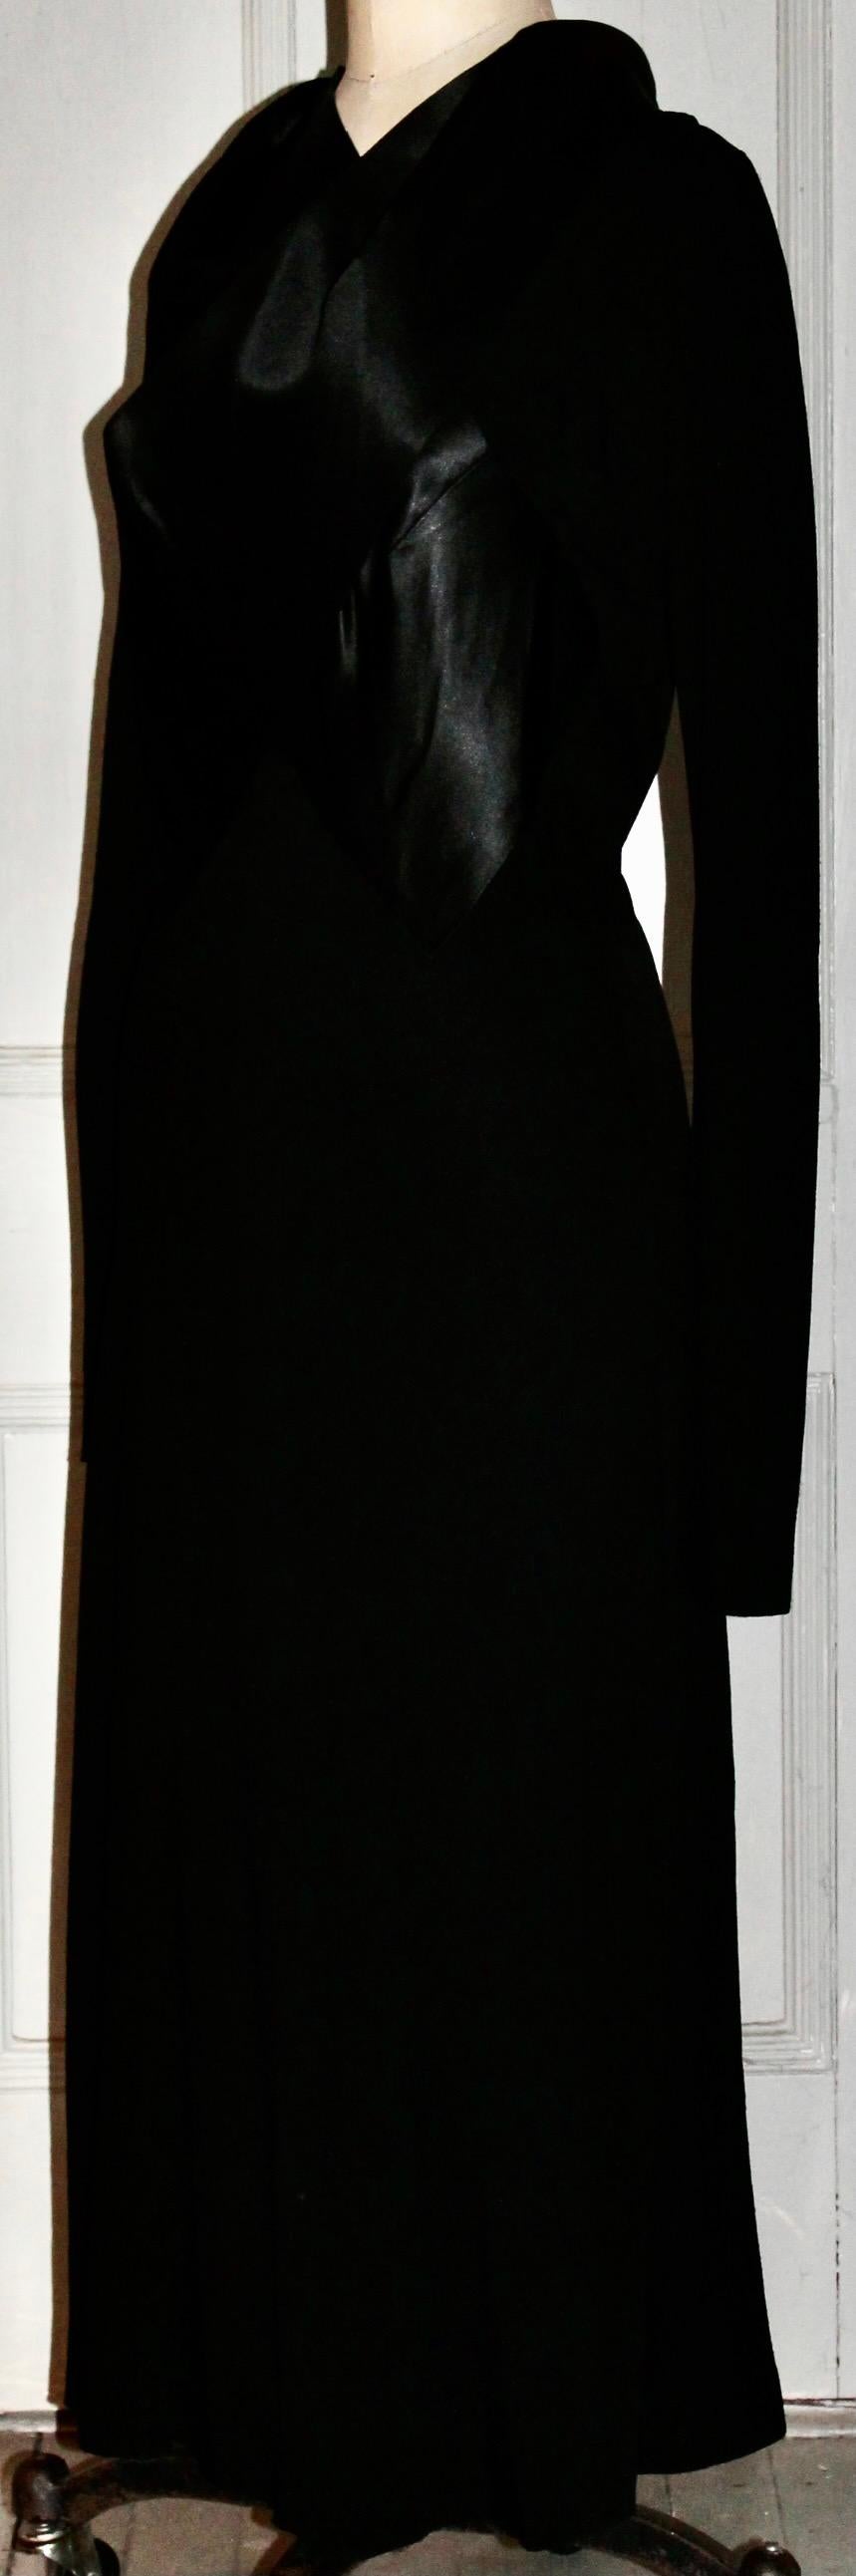 France Vramant Black Crepe Silk Evening Gown, 1930's Paris  For Sale 5